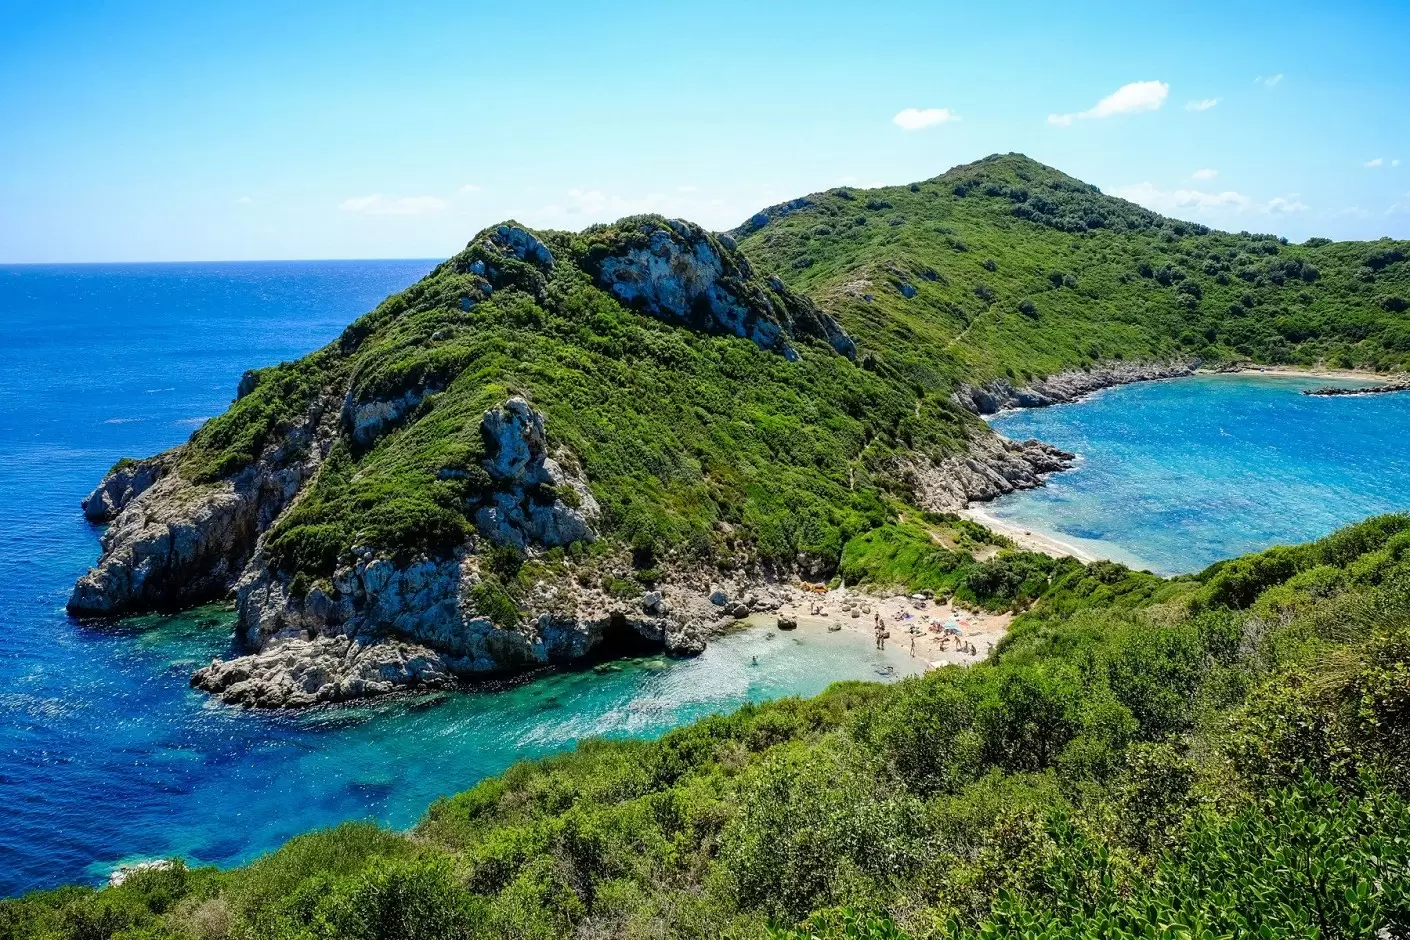 Ką verta žinoti prieš vykstant į Korfu?